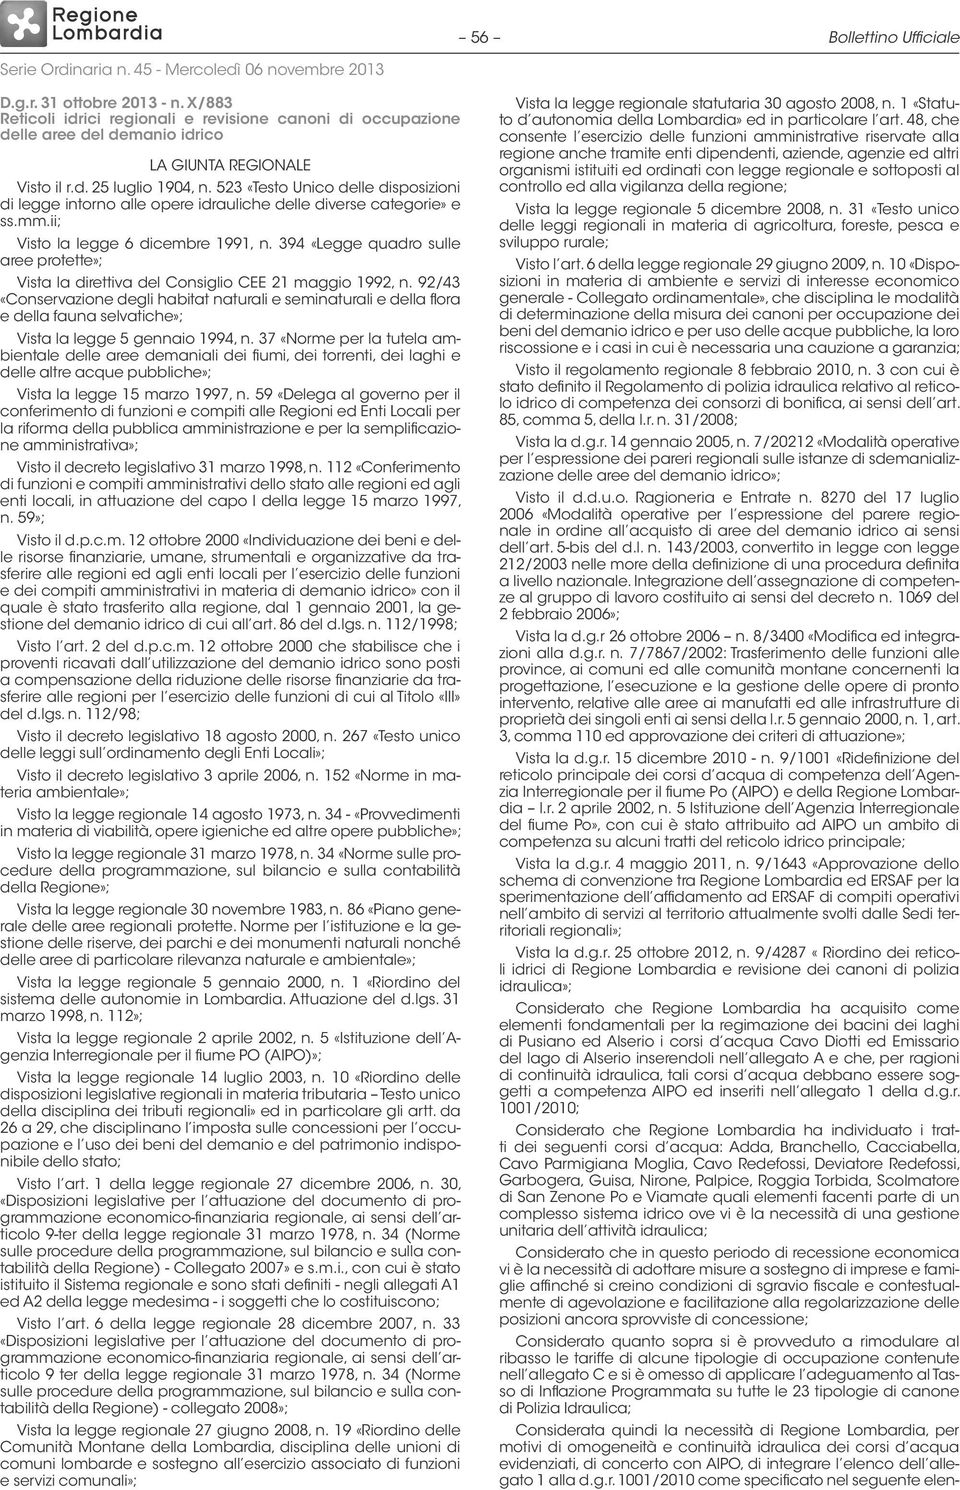 394 «Legge quadro sulle aree protette»; Vista la direttiva del Consiglio CEE 21 maggio 1992, n.